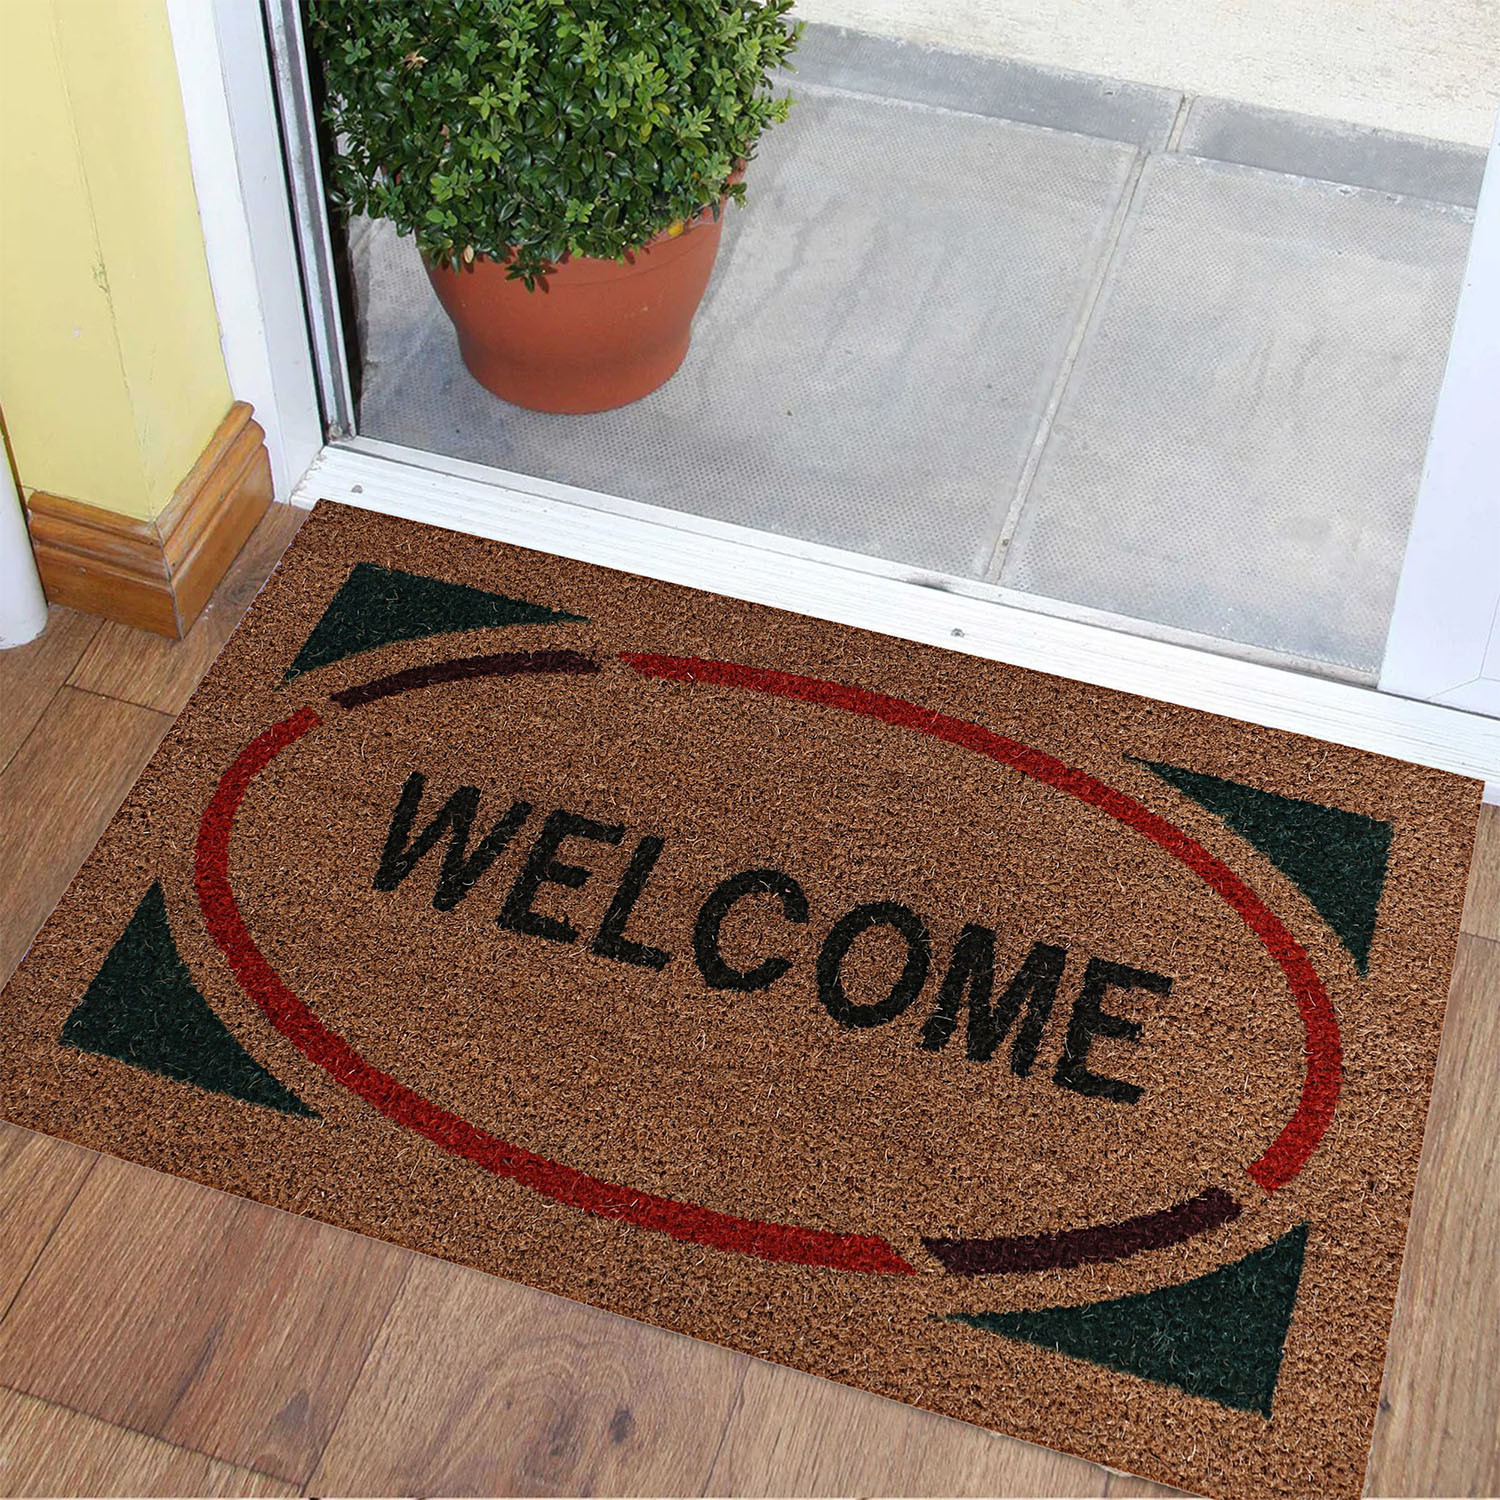 Kuber Industries Door Mat|Polyethylene Durable & Anti-Slip Natural Oval Welcome Print Floor Mat|Rug For Indoor or Outdoor, 30x20 Inch (Brown)